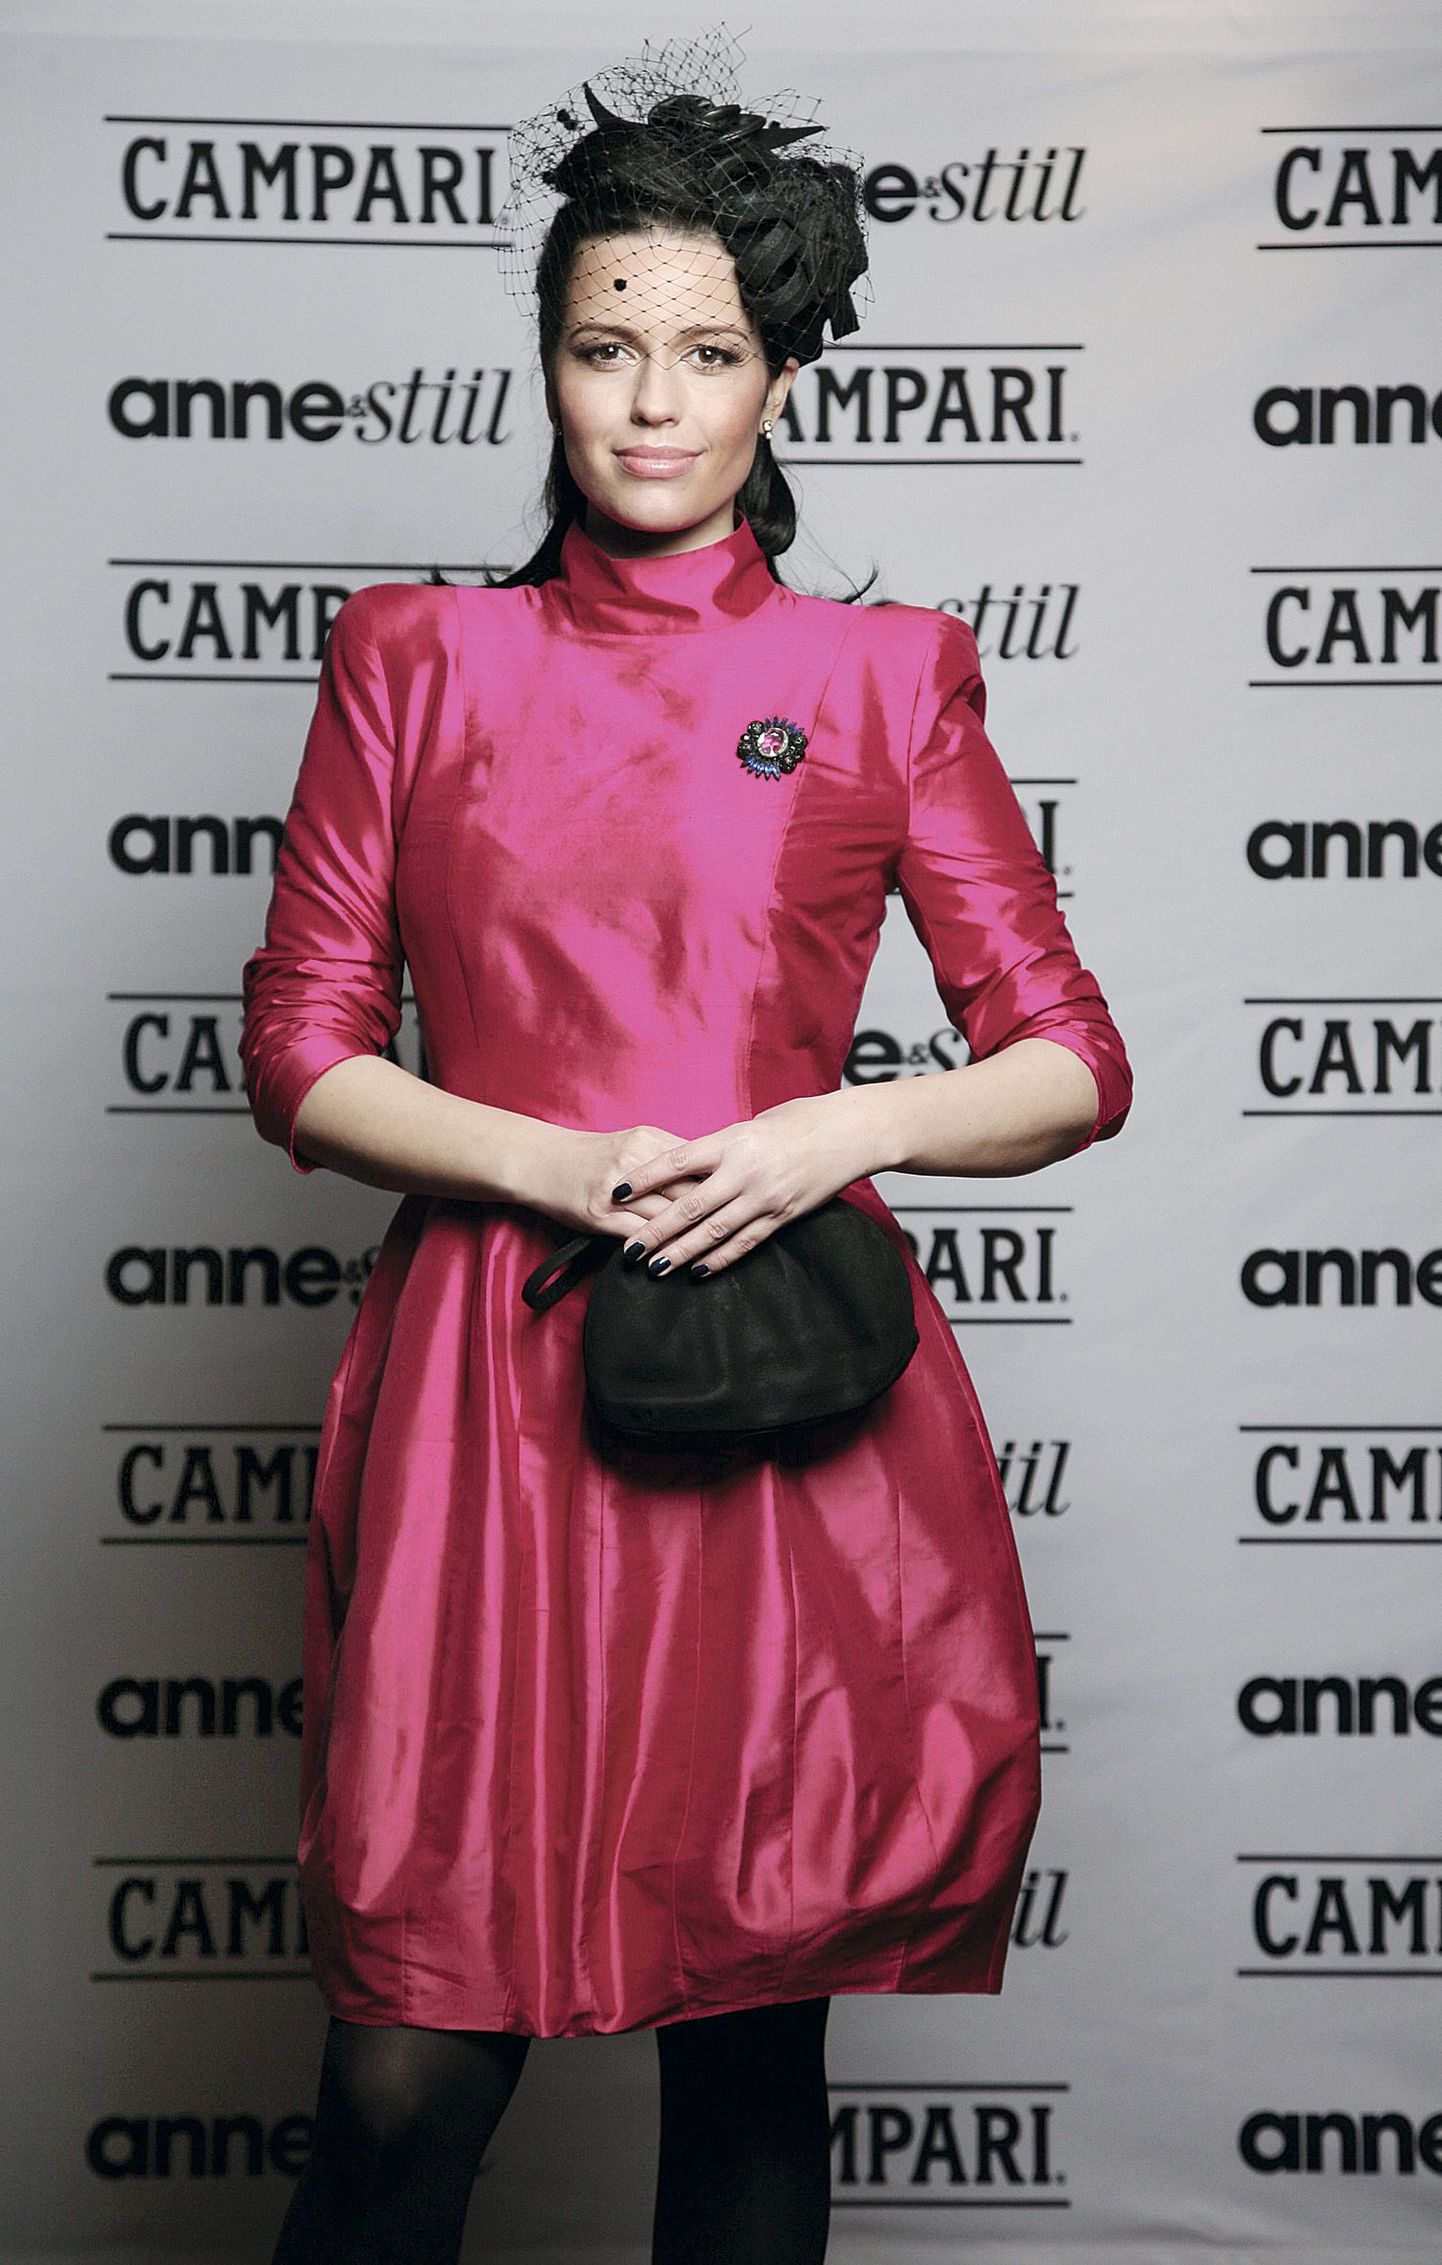 Anne & Stiili galal Ilulemmik 2010 kandis Merle Liivak Ivo Nikkolo poest soetatud
kleiti